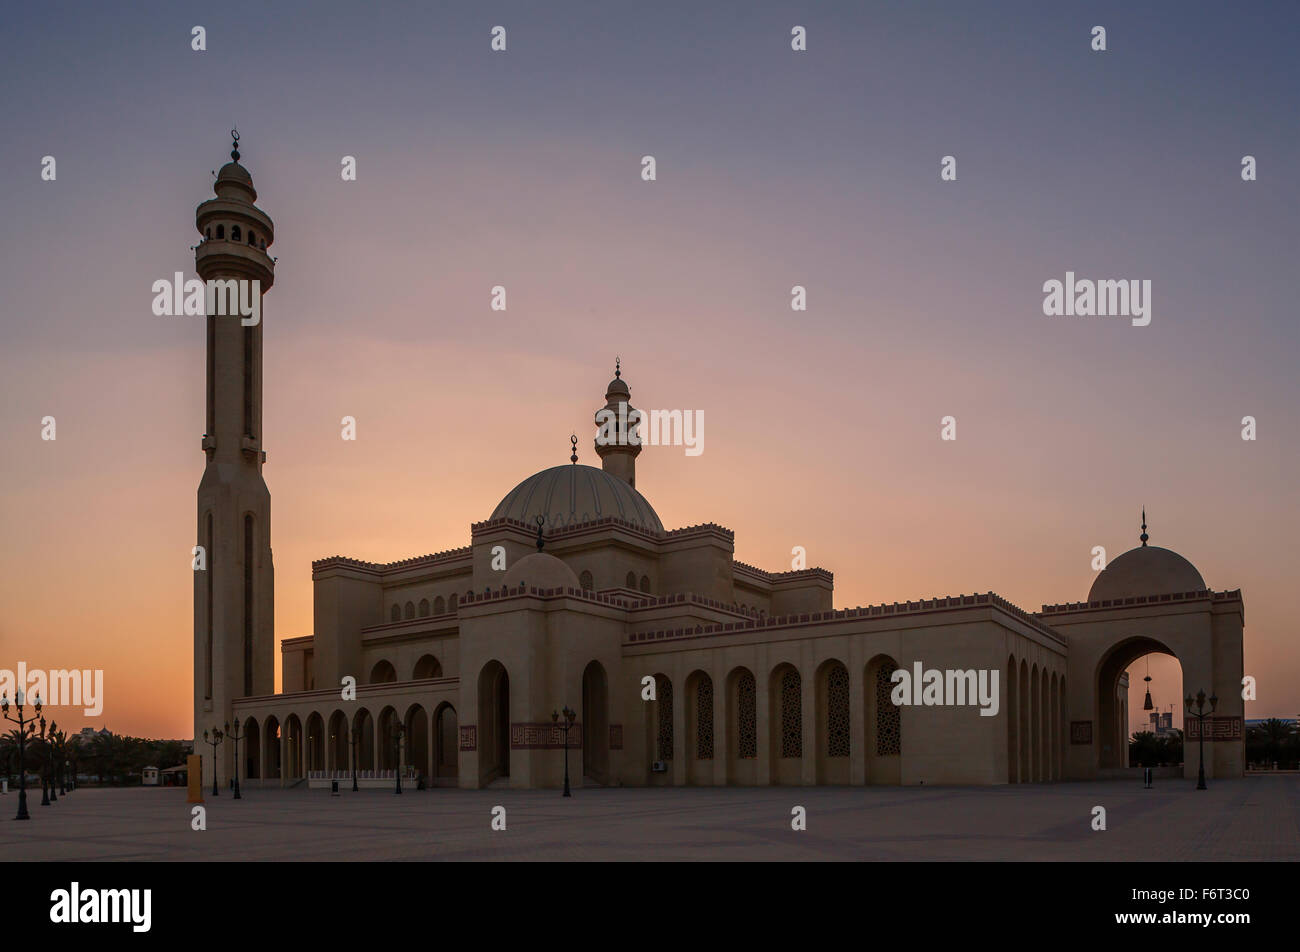 La moschea e la torre sotto il cielo al tramonto, Manama, Bahrain Foto Stock